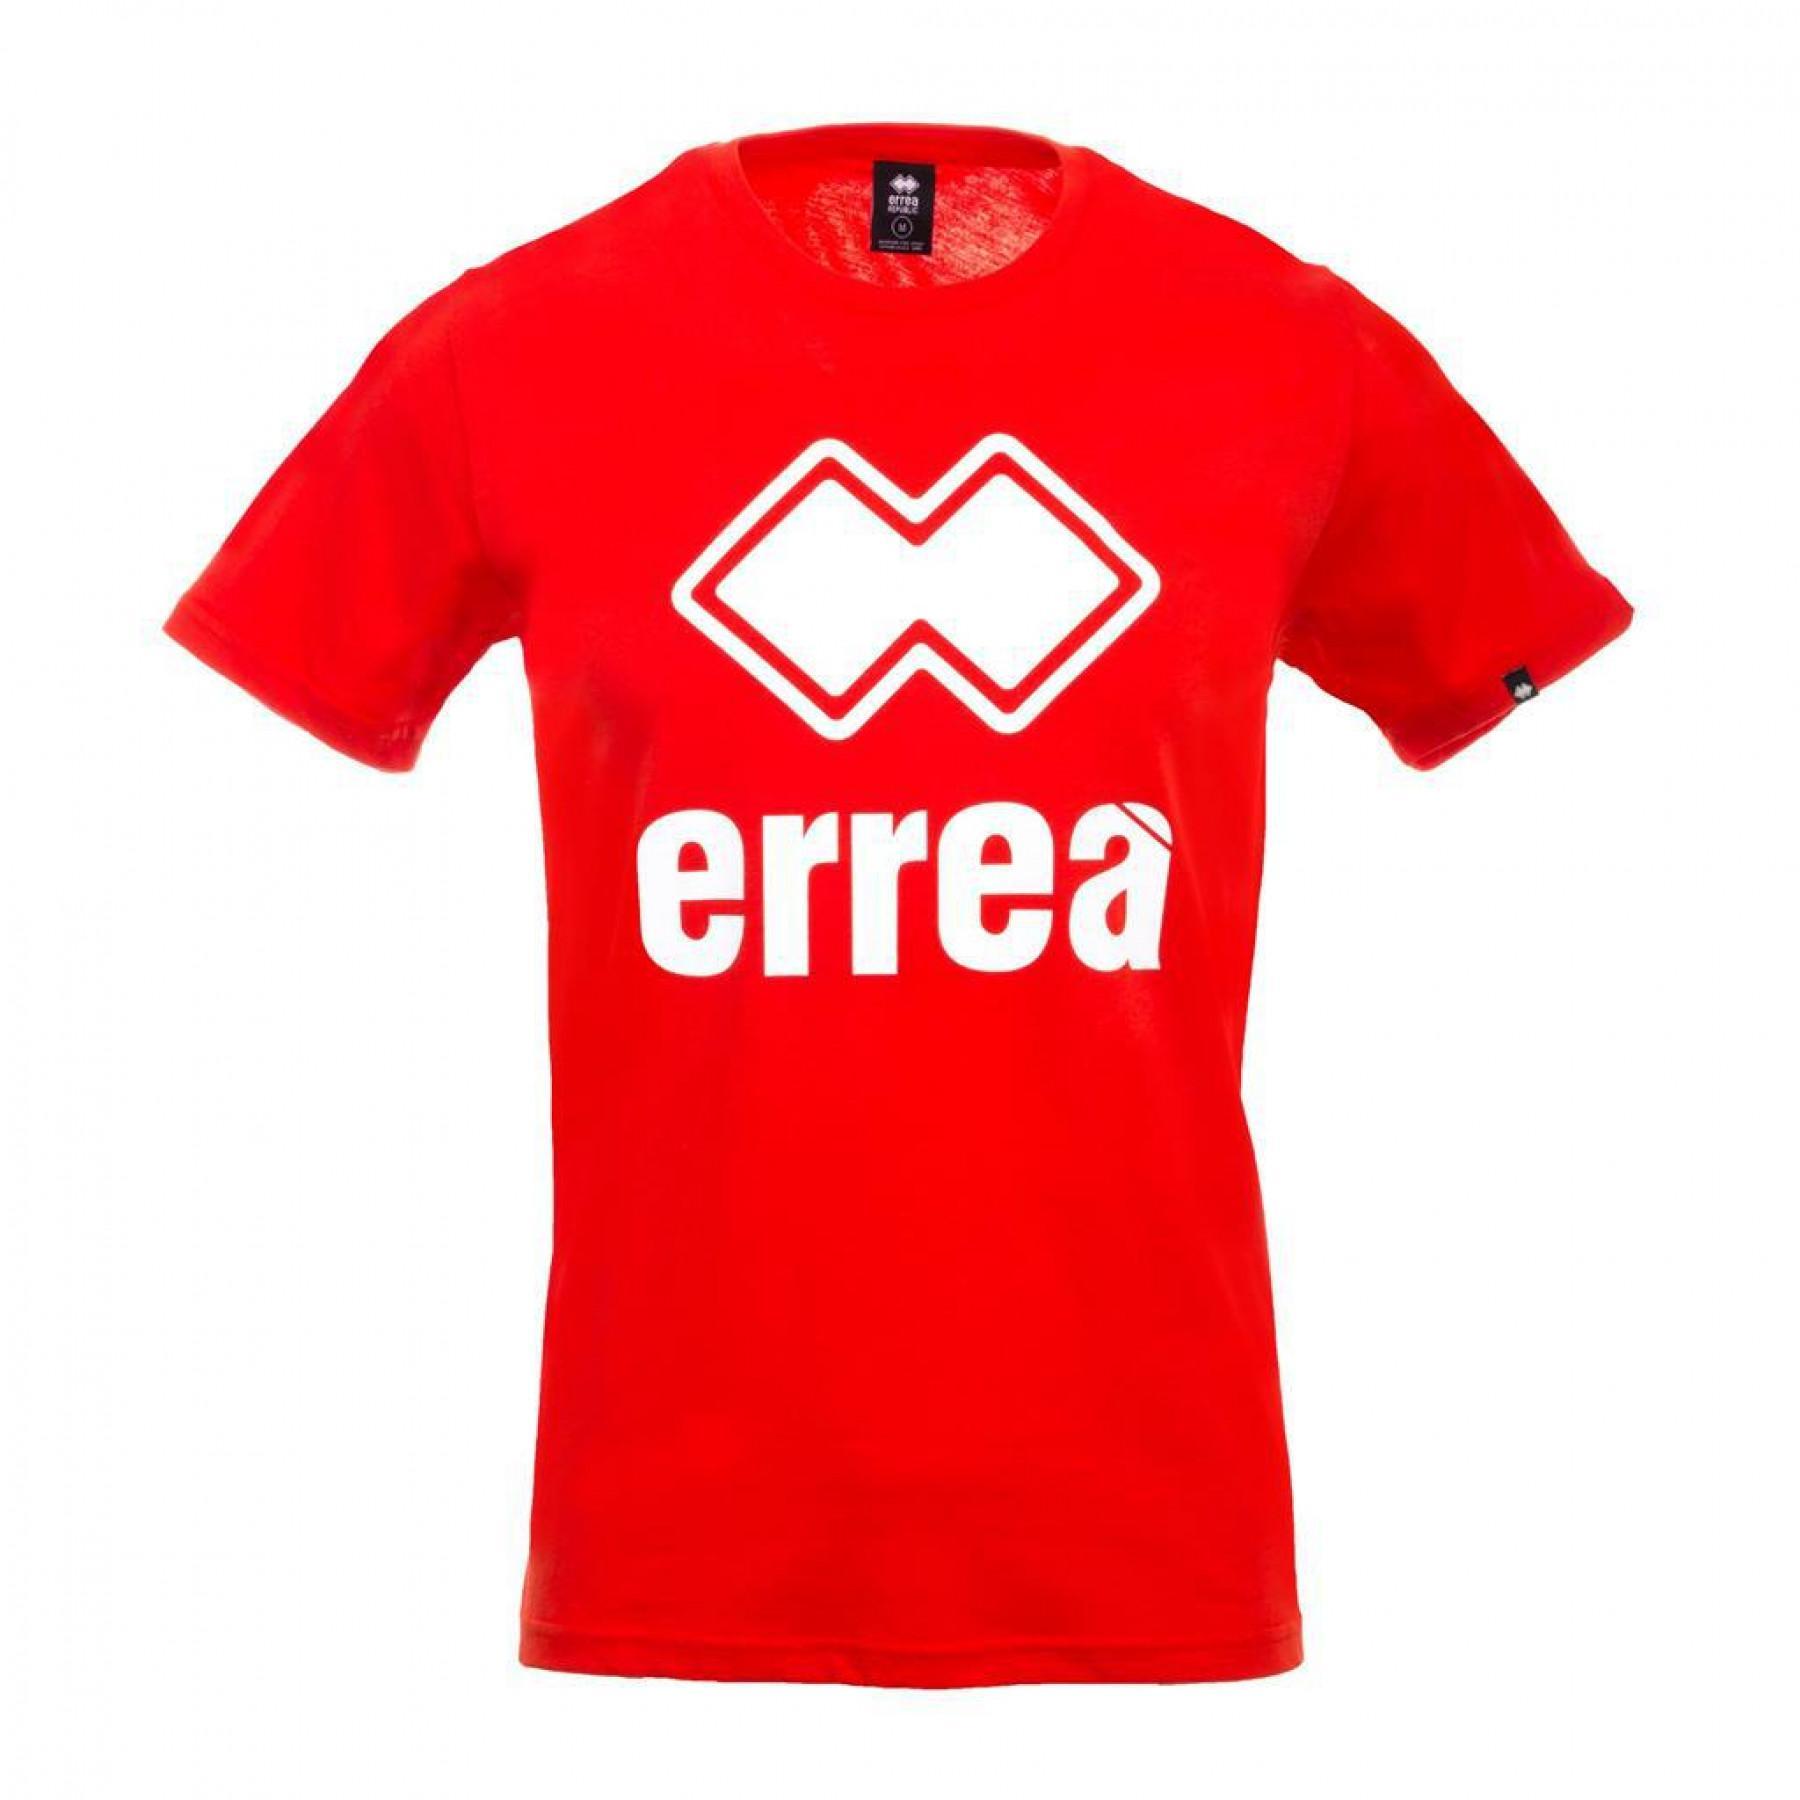 Camiseta Errea essential classic